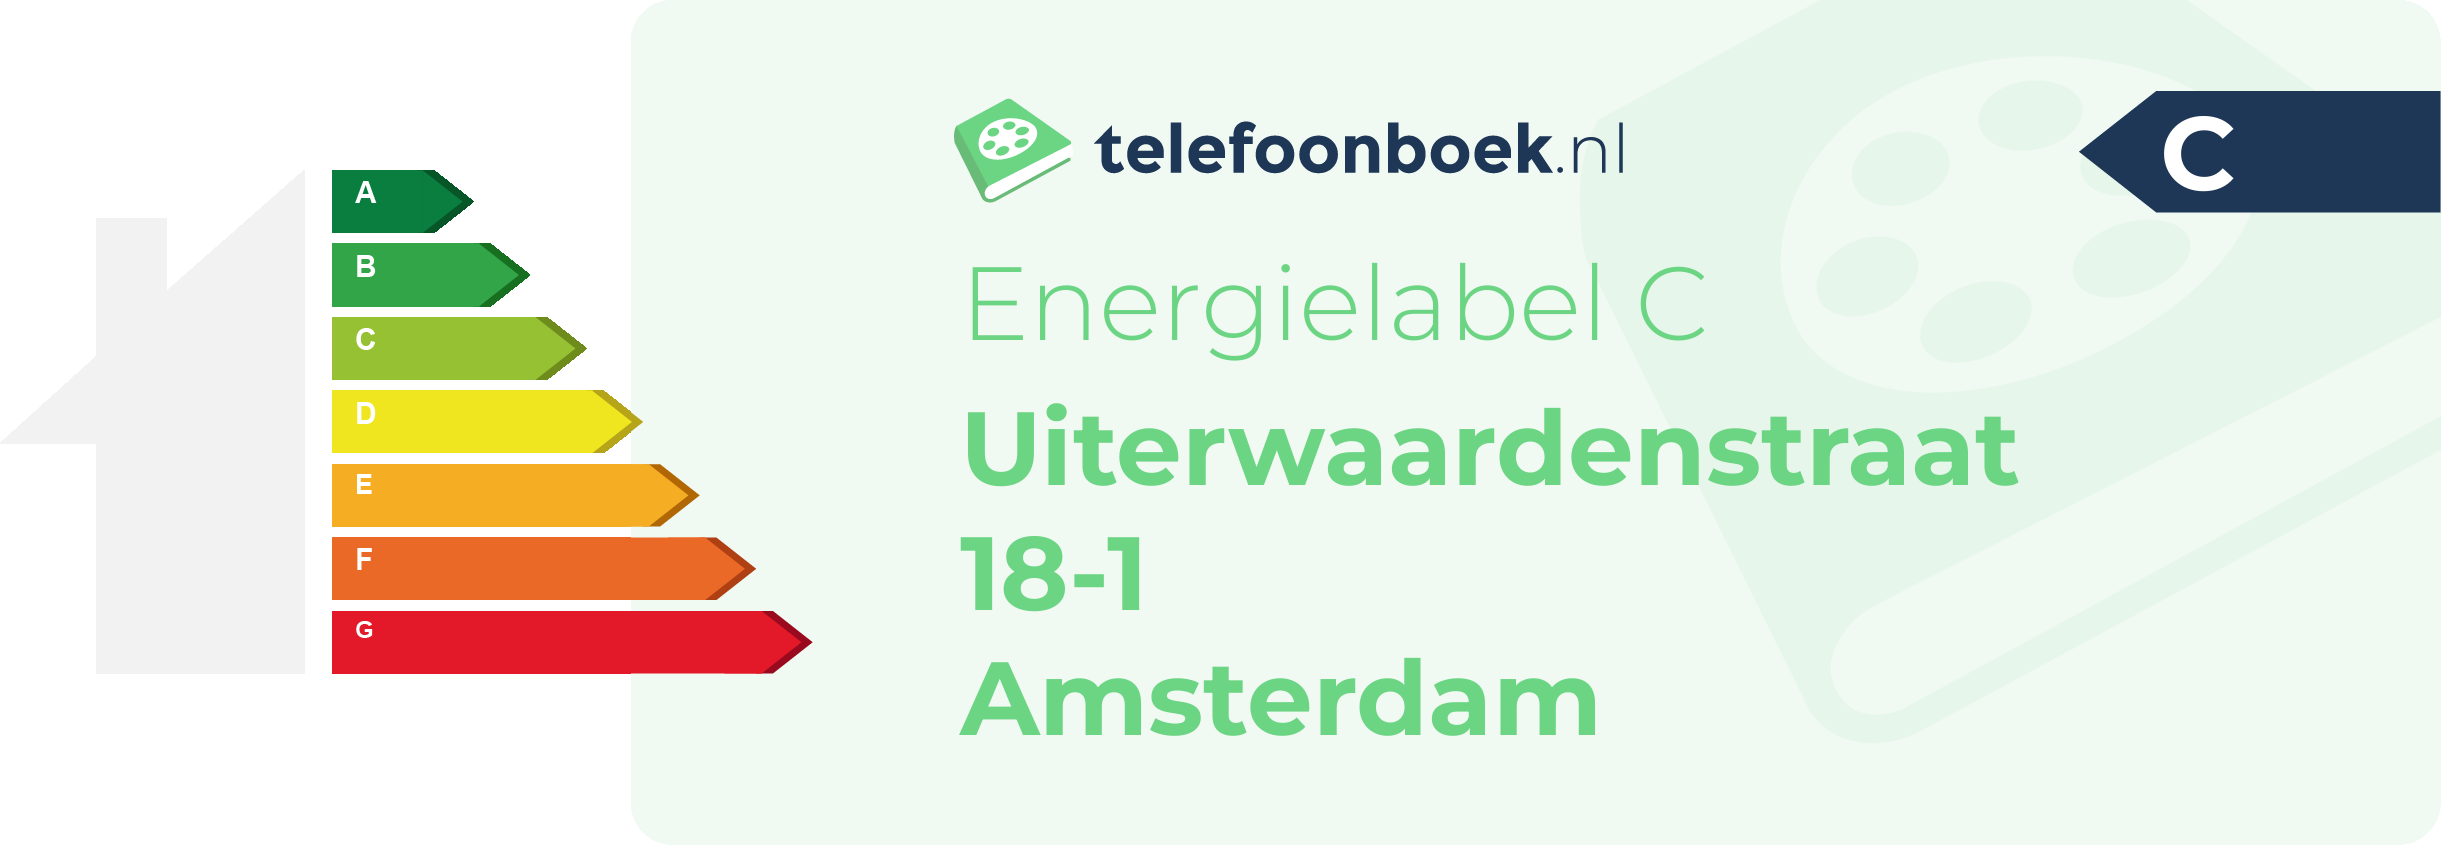 Energielabel Uiterwaardenstraat 18-1 Amsterdam